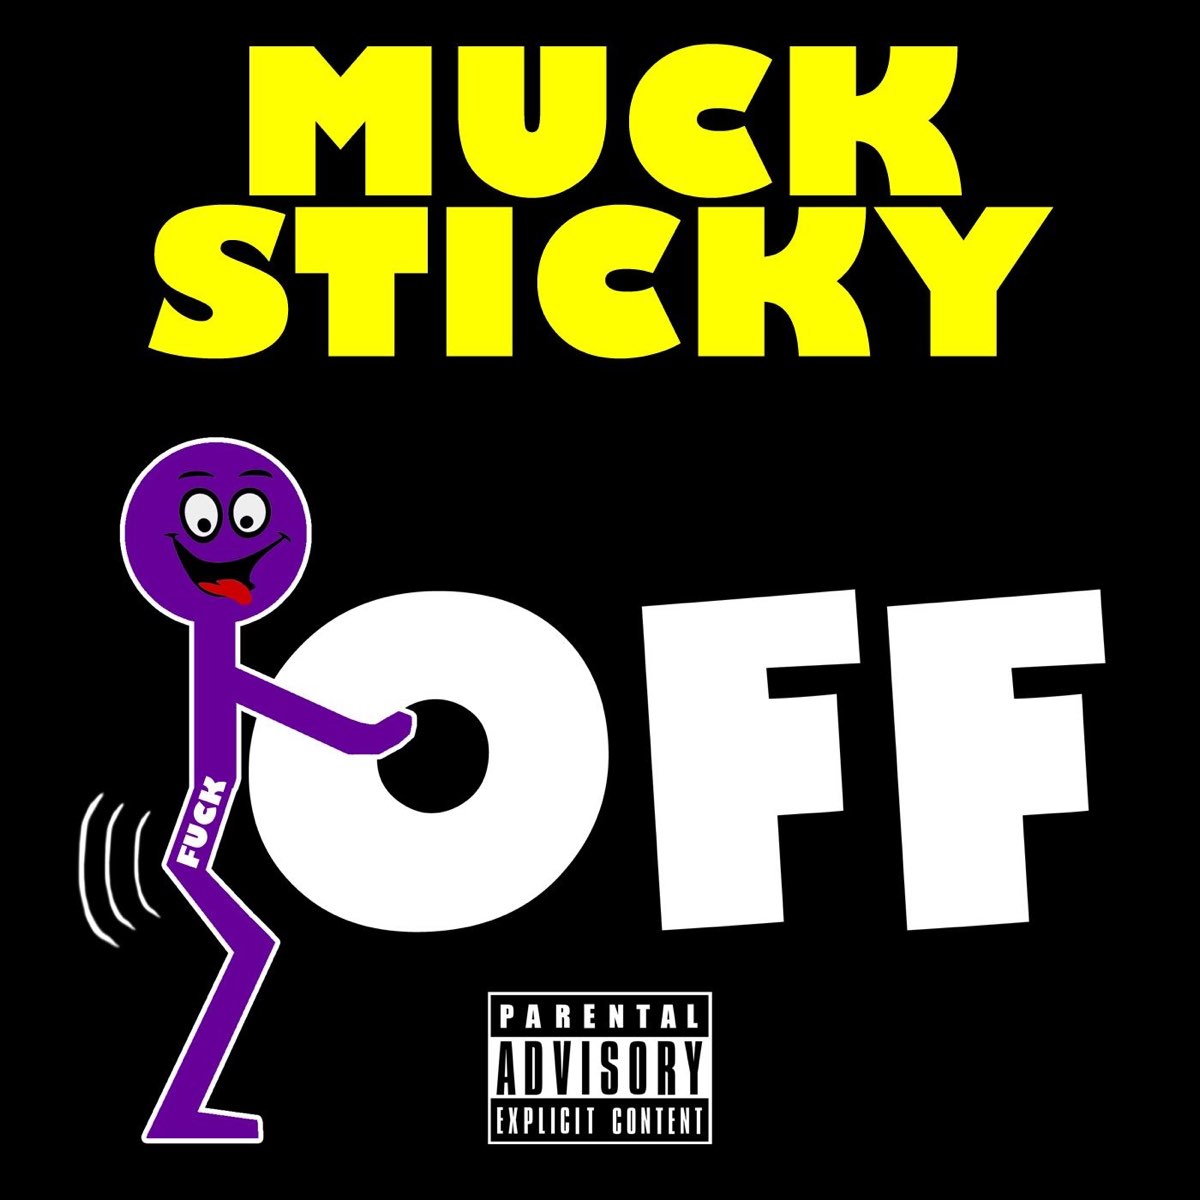 Muck sticky f off lyrics